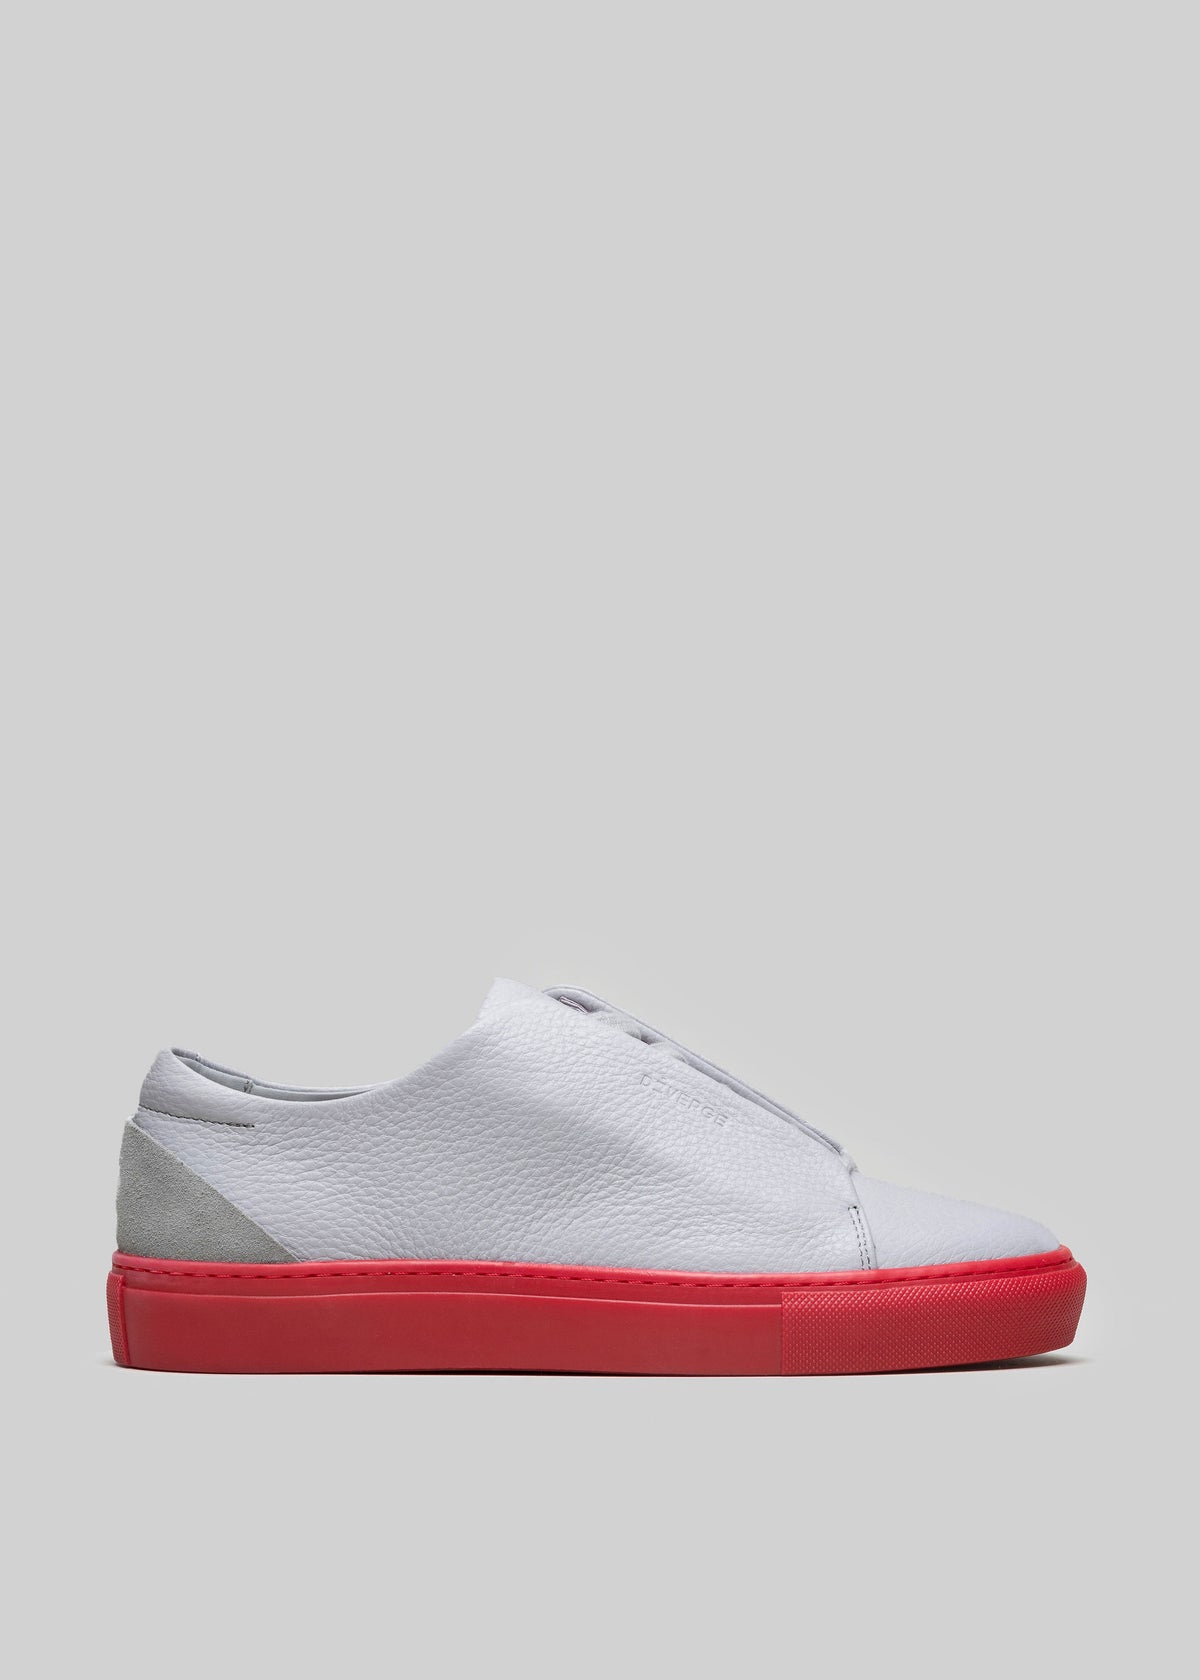 cuero premium gris y rojo bajo sneakers en diseño limpio sideview